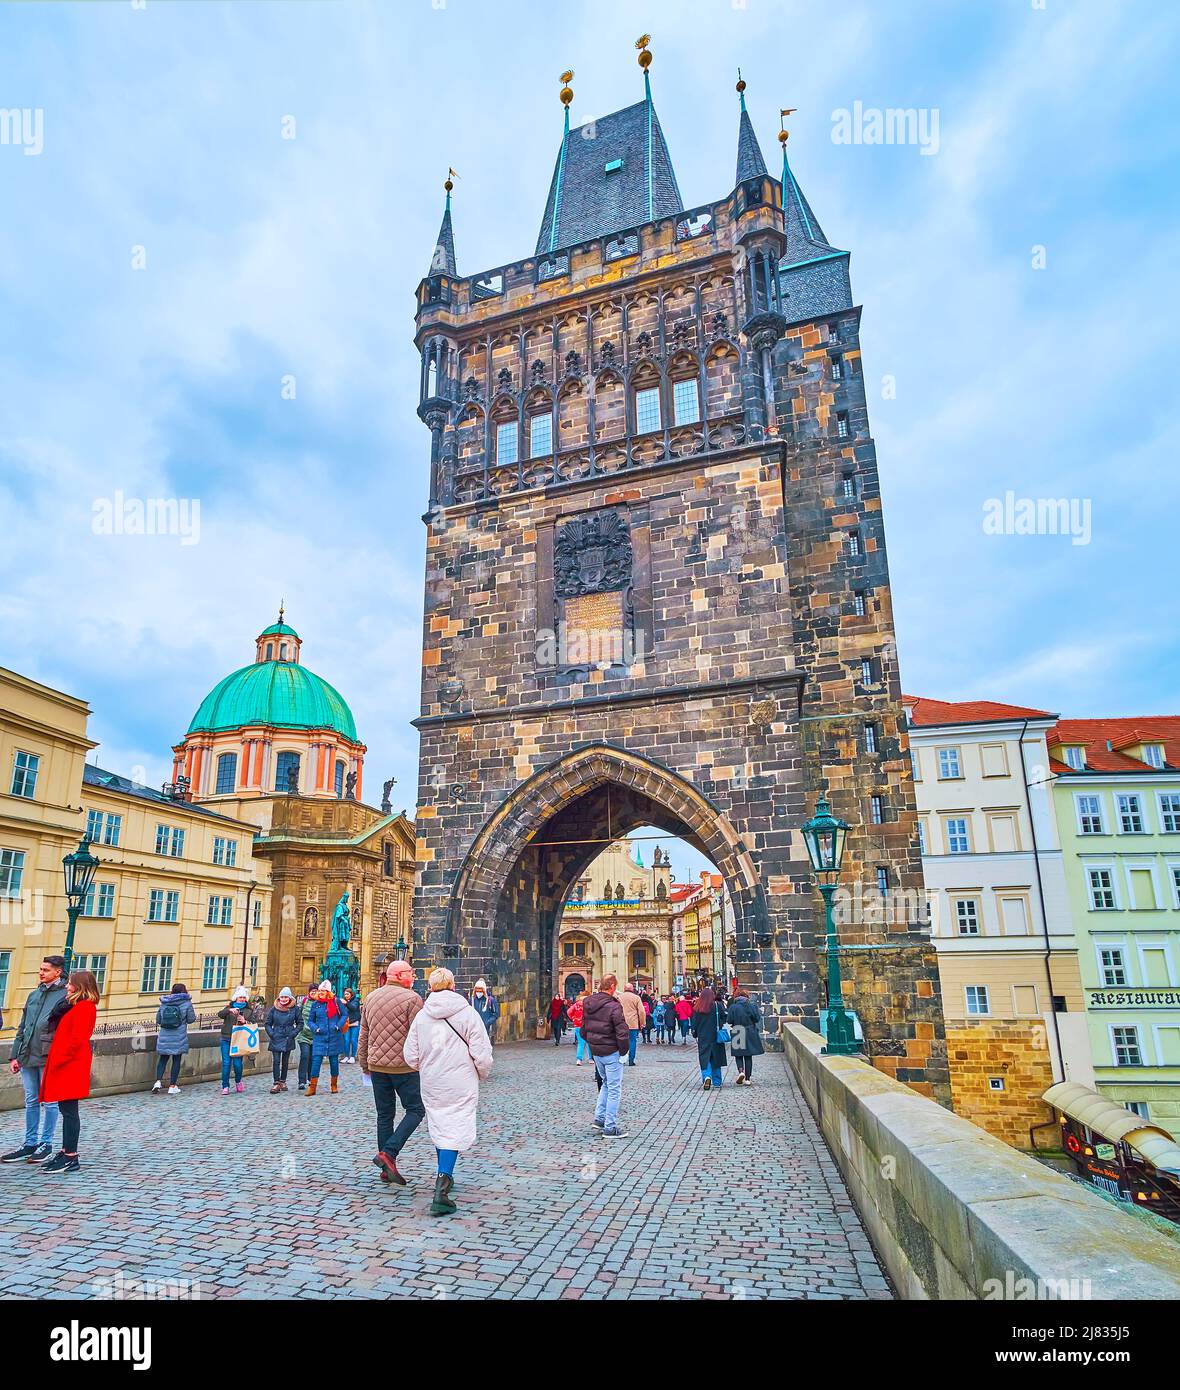 PRAG, TSCHECHISCHE REPUBLIK - 5. MÄRZ 2022: Der mittelalterliche gotische Altstadtbrücke Turm der Karlsbrücke, der ihn mit dem Kreuzfahrerplatz verbindet, am 5. März i. Stockfoto